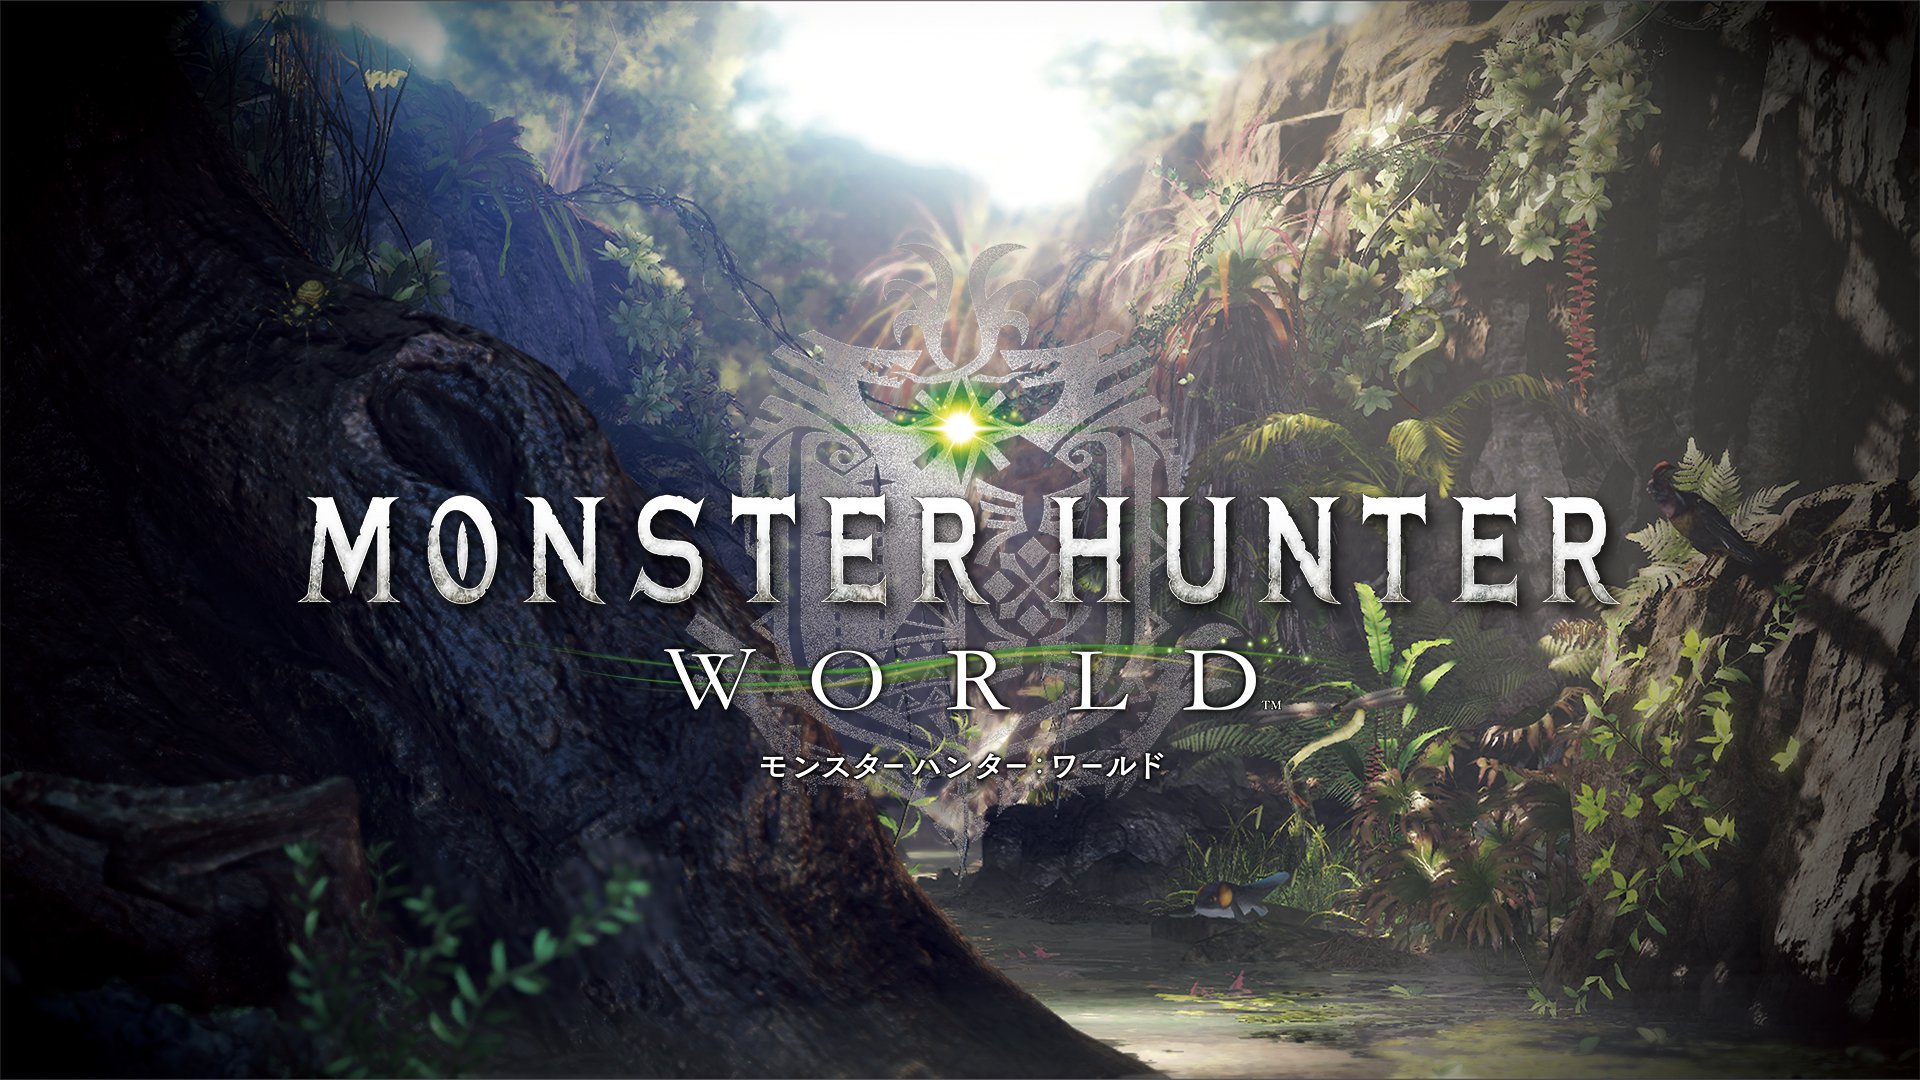 Video Game Monster Hunter World 1920x1080